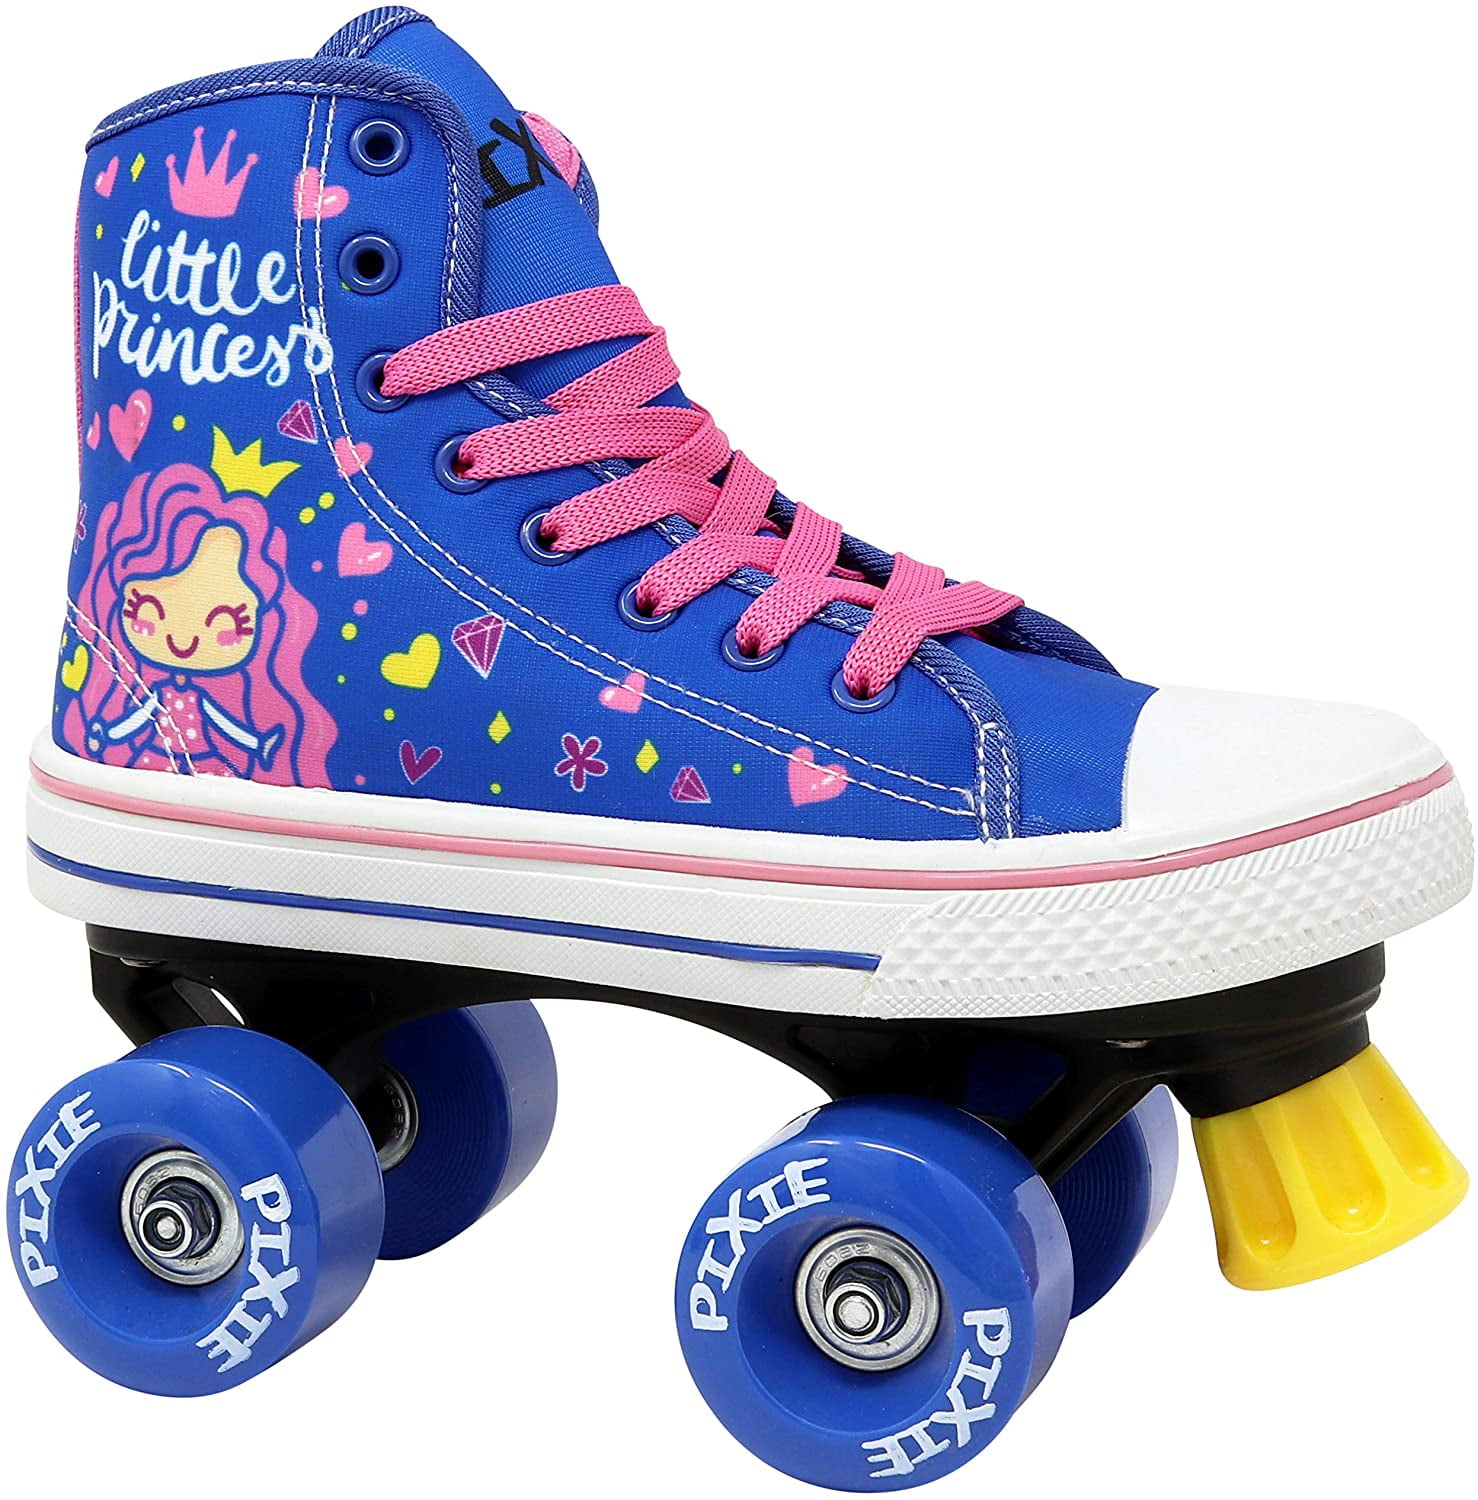 Lenexa Roller Skates for Girls - Pixie Mermaid Kids Quad Roller